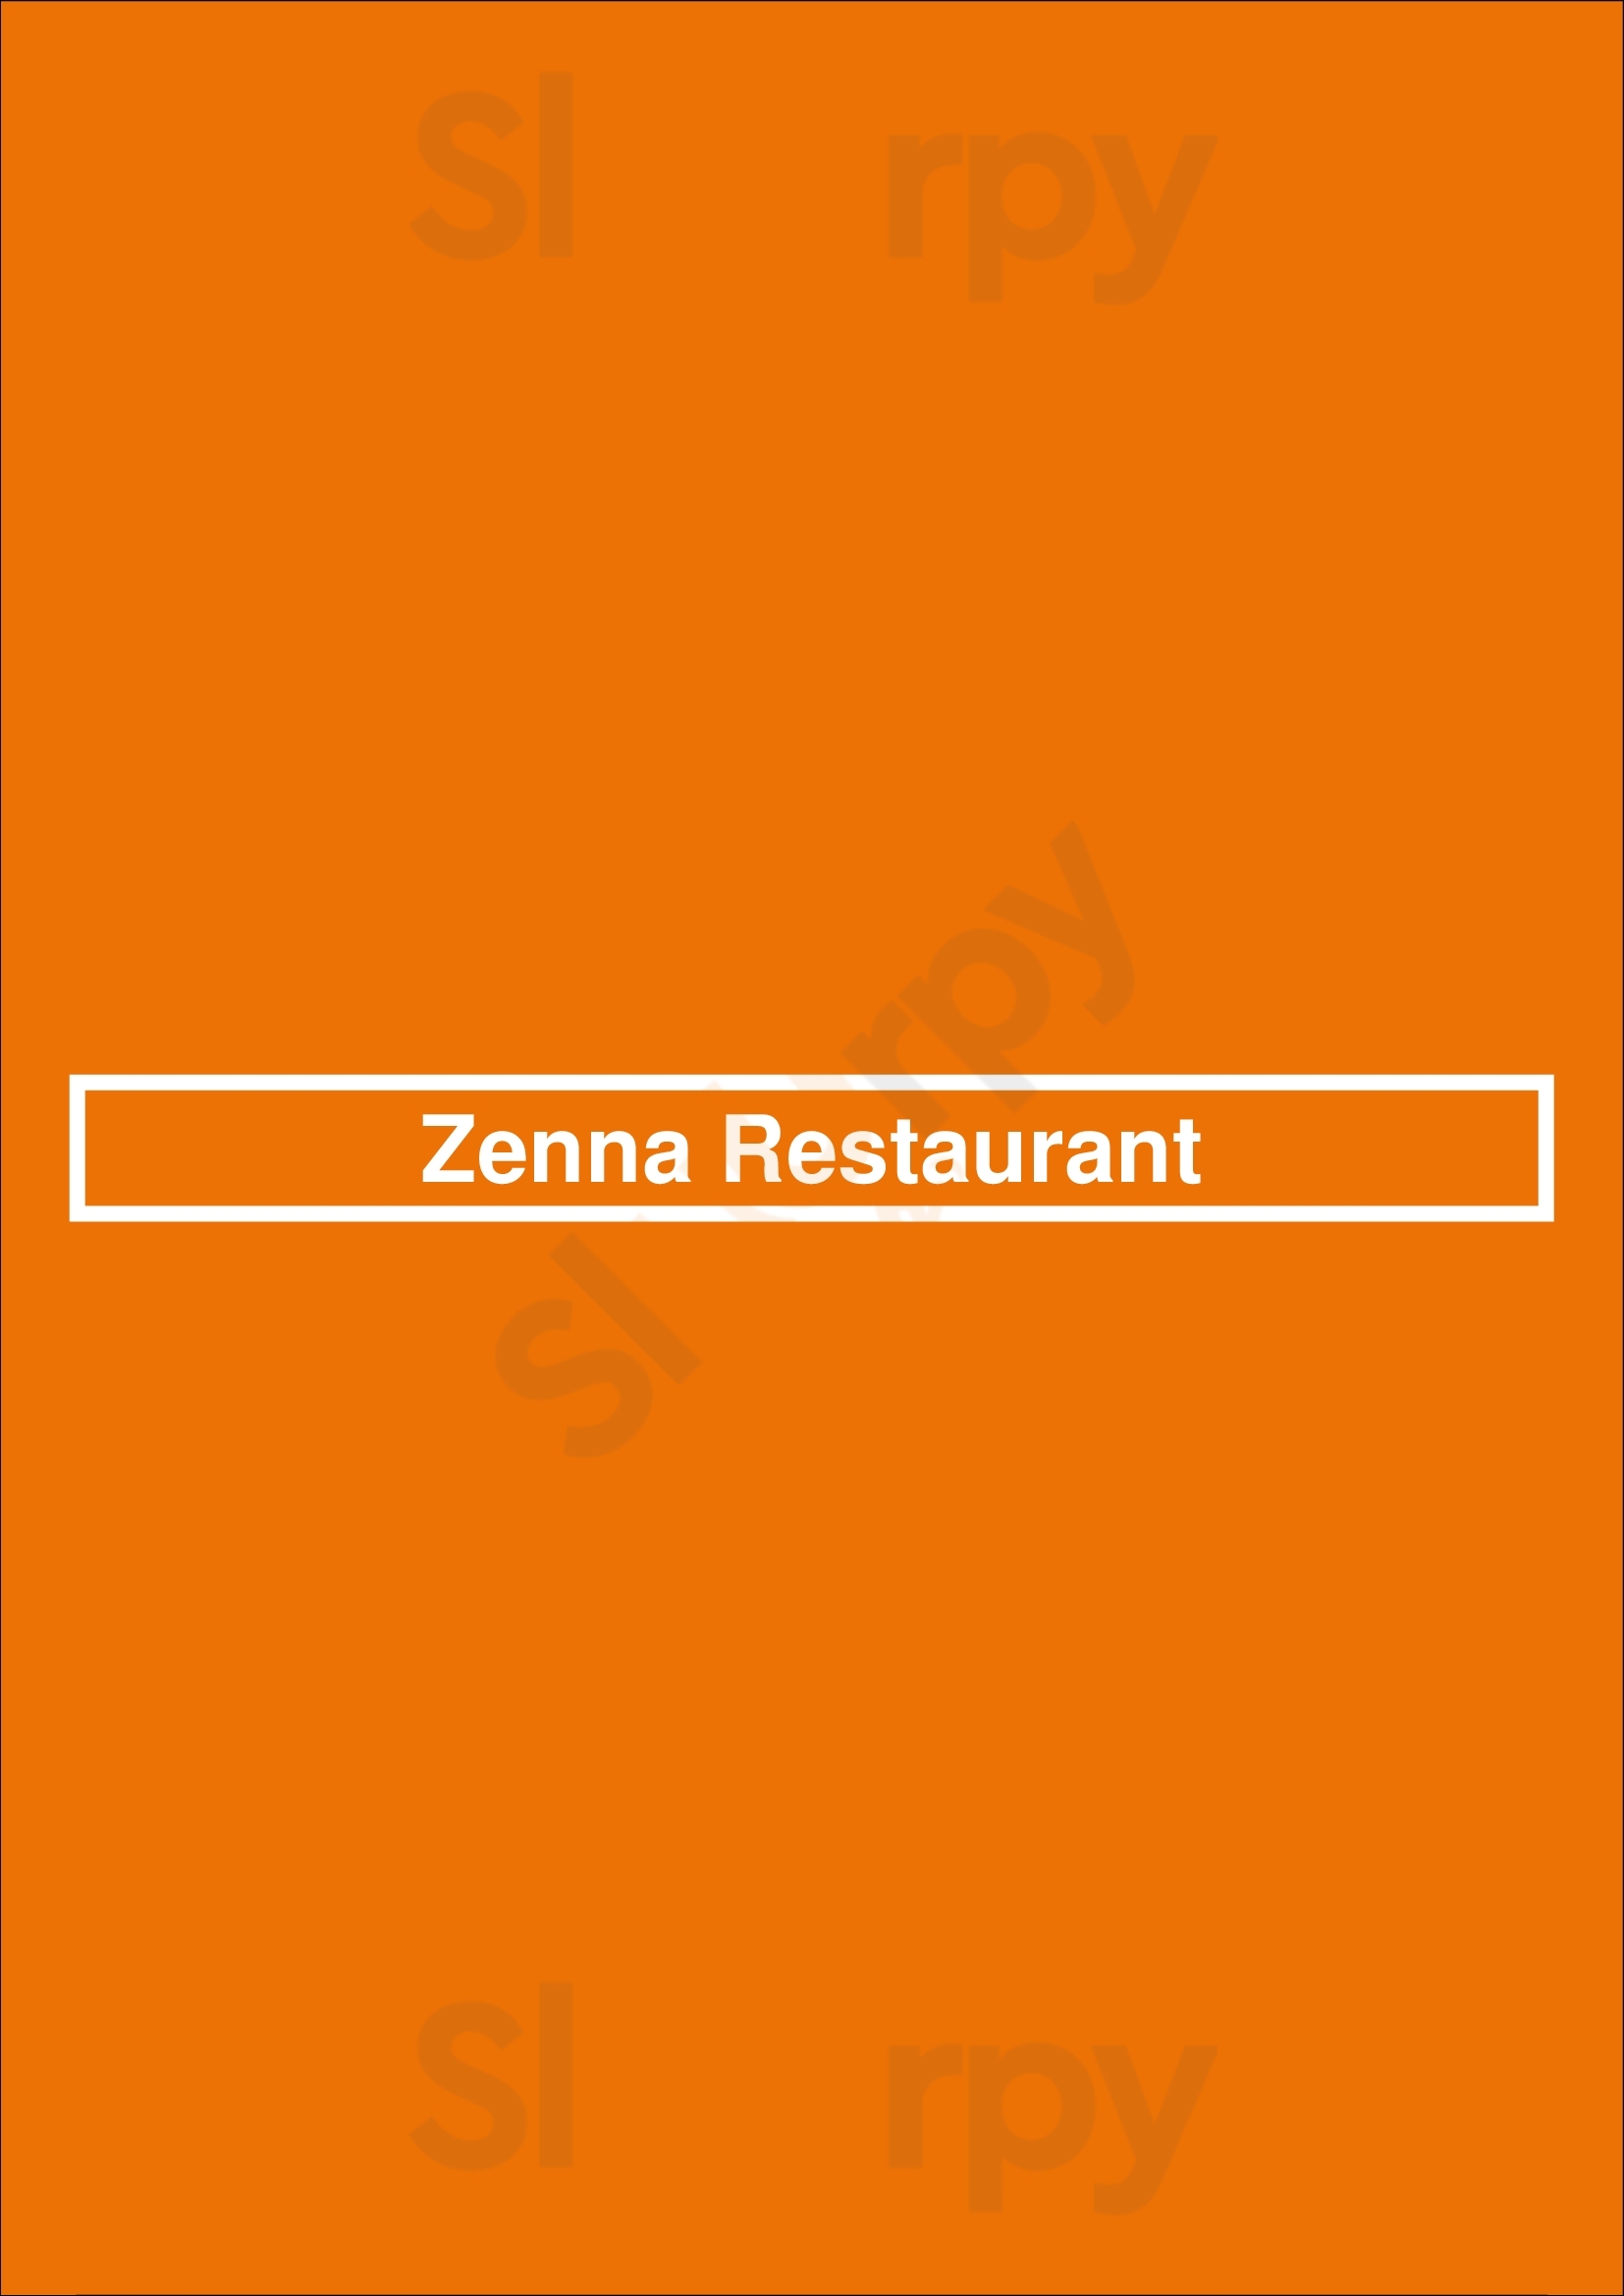 Zenna Restaurant Fort Worth Menu - 1